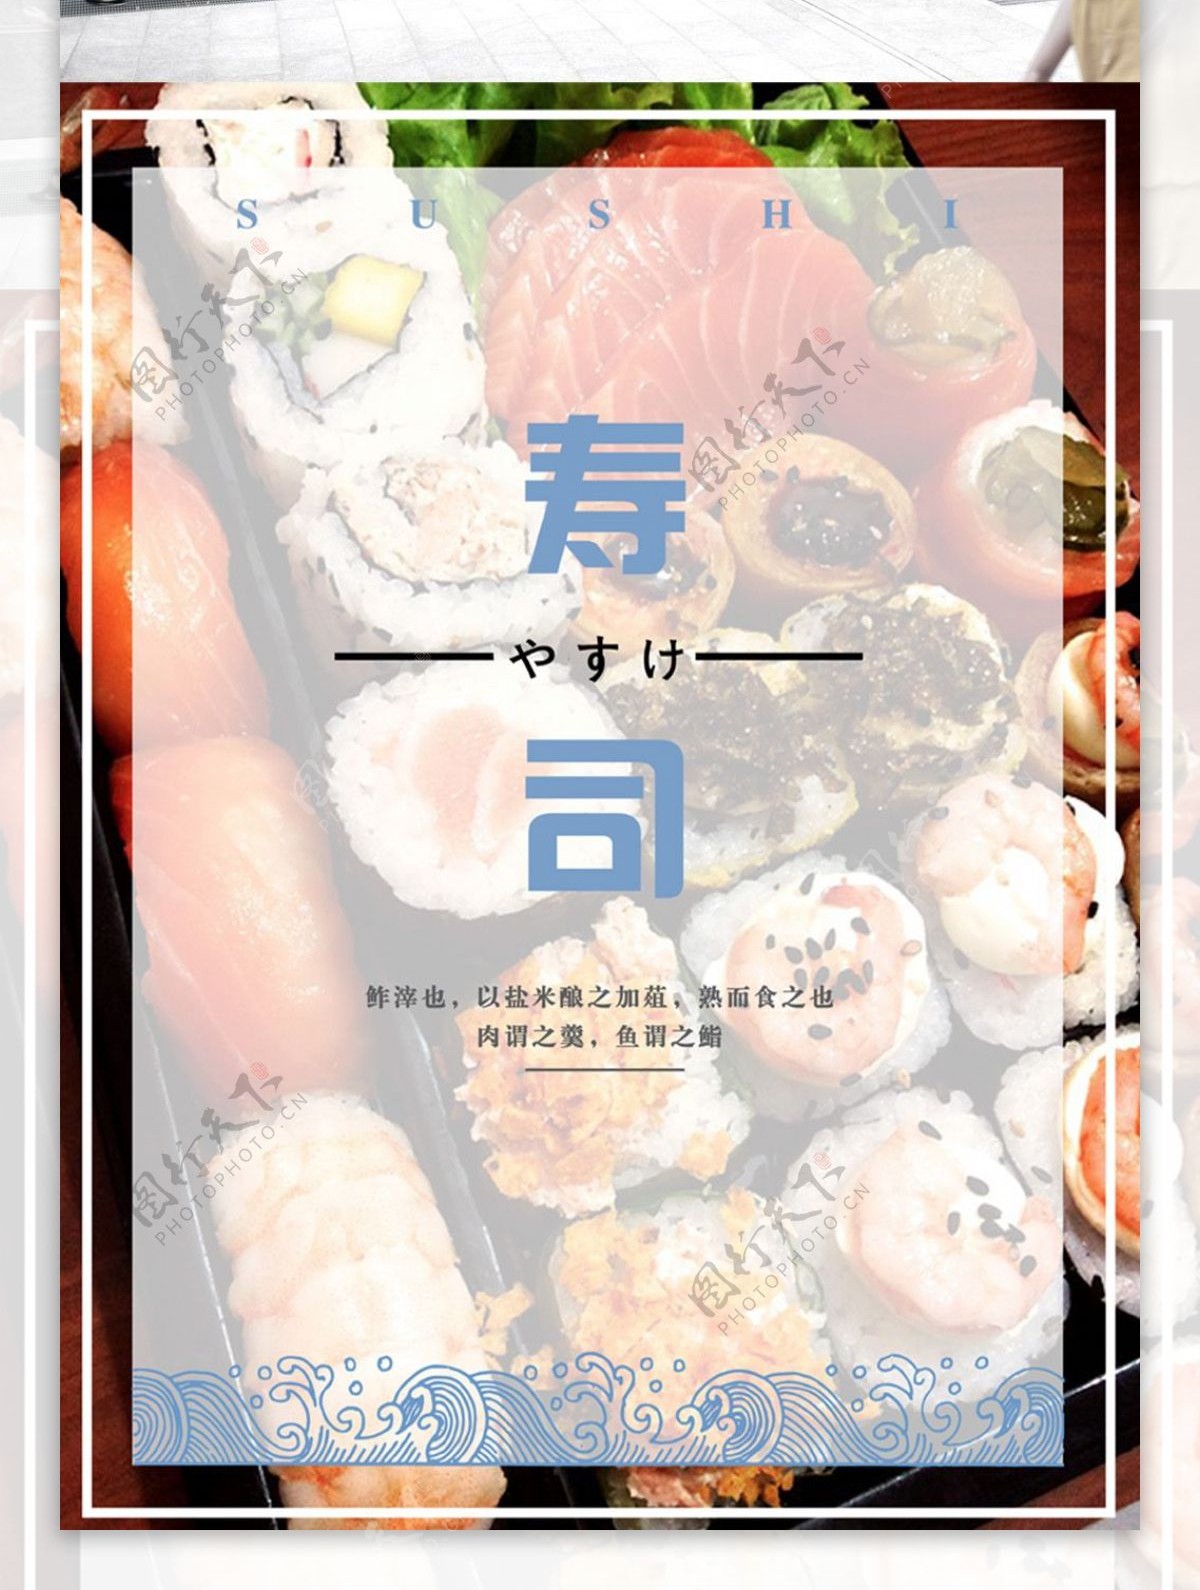 简约日式料理寿司美食海报